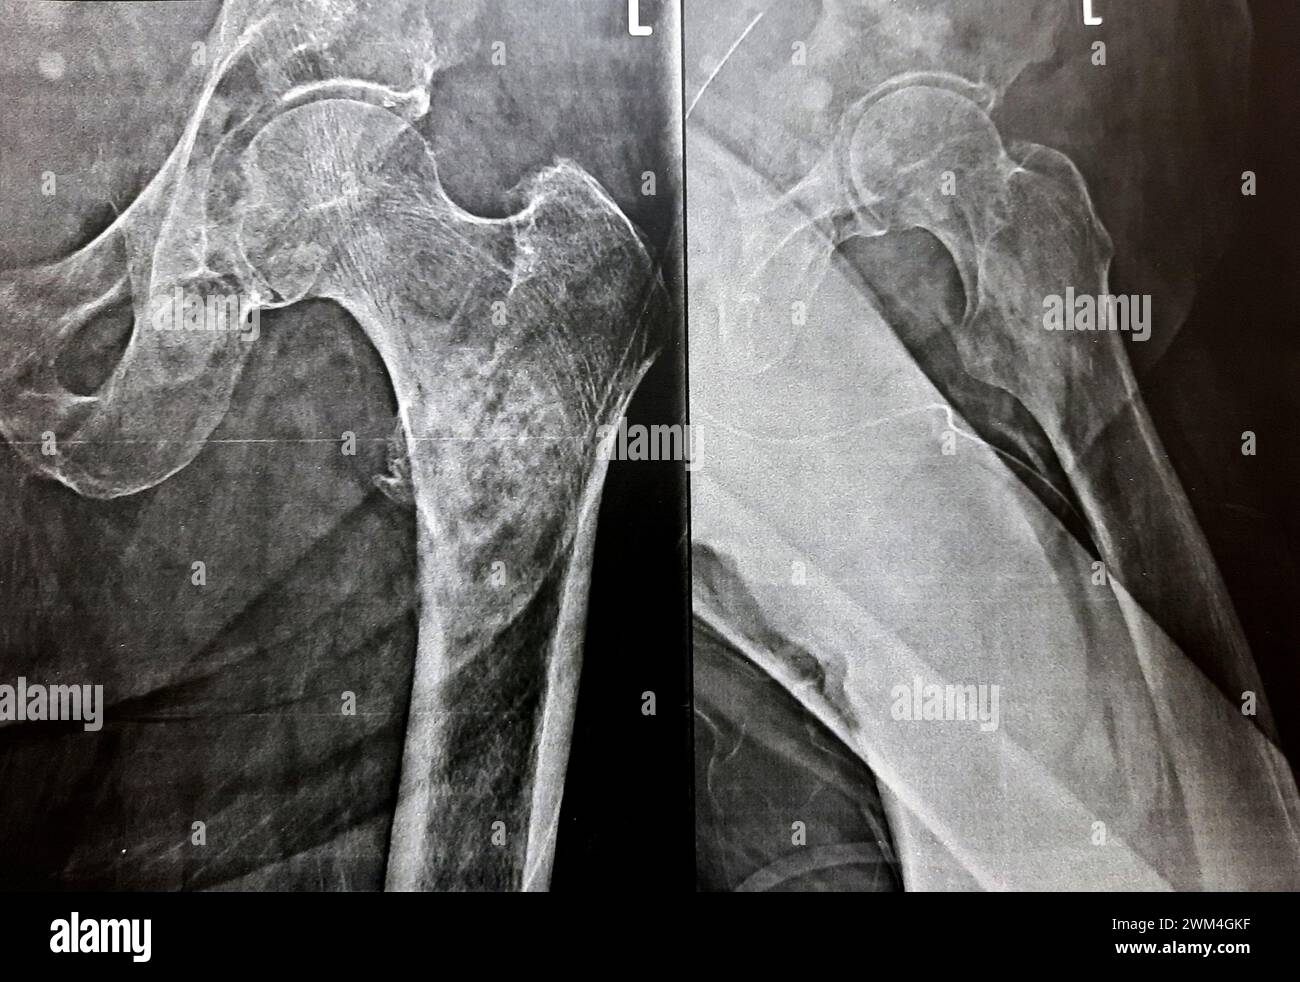 Radiografia semplice con alta probabilità di frattura subtrocanterica, trocanterica e metastasi maligne nel lato mediale dell'albero femorale sottostante Foto Stock